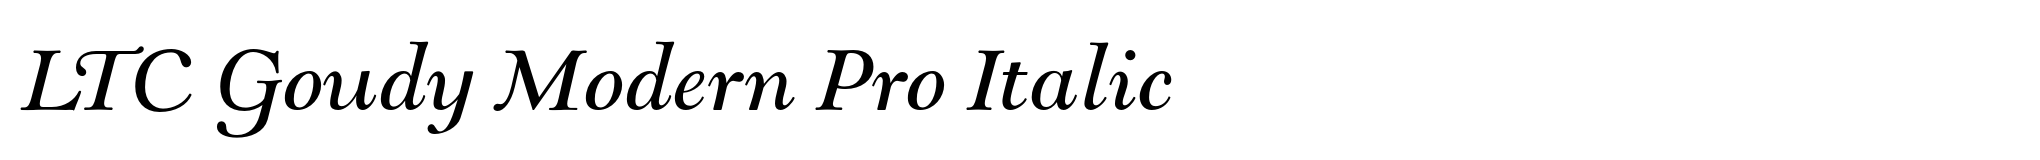 LTC Goudy Modern Pro Italic image